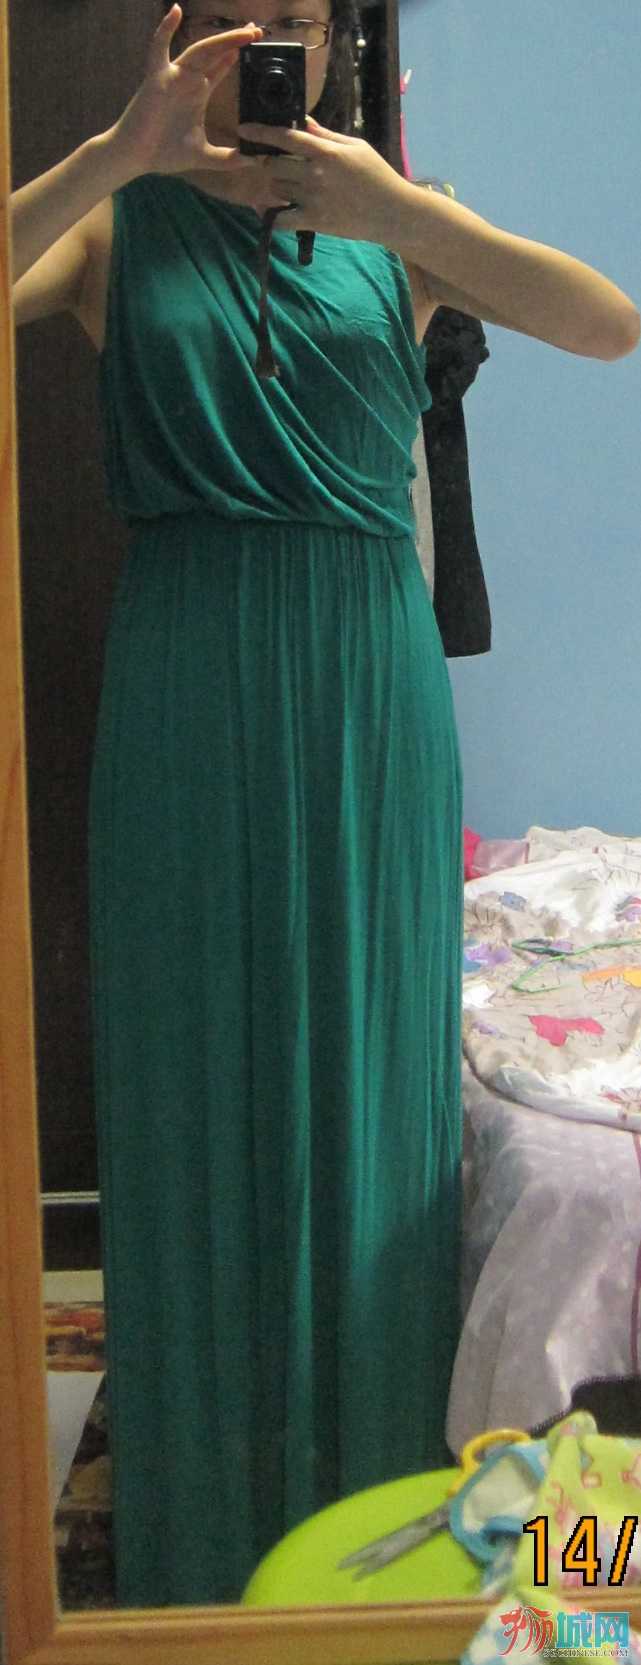 Green Long Dress front.jpg